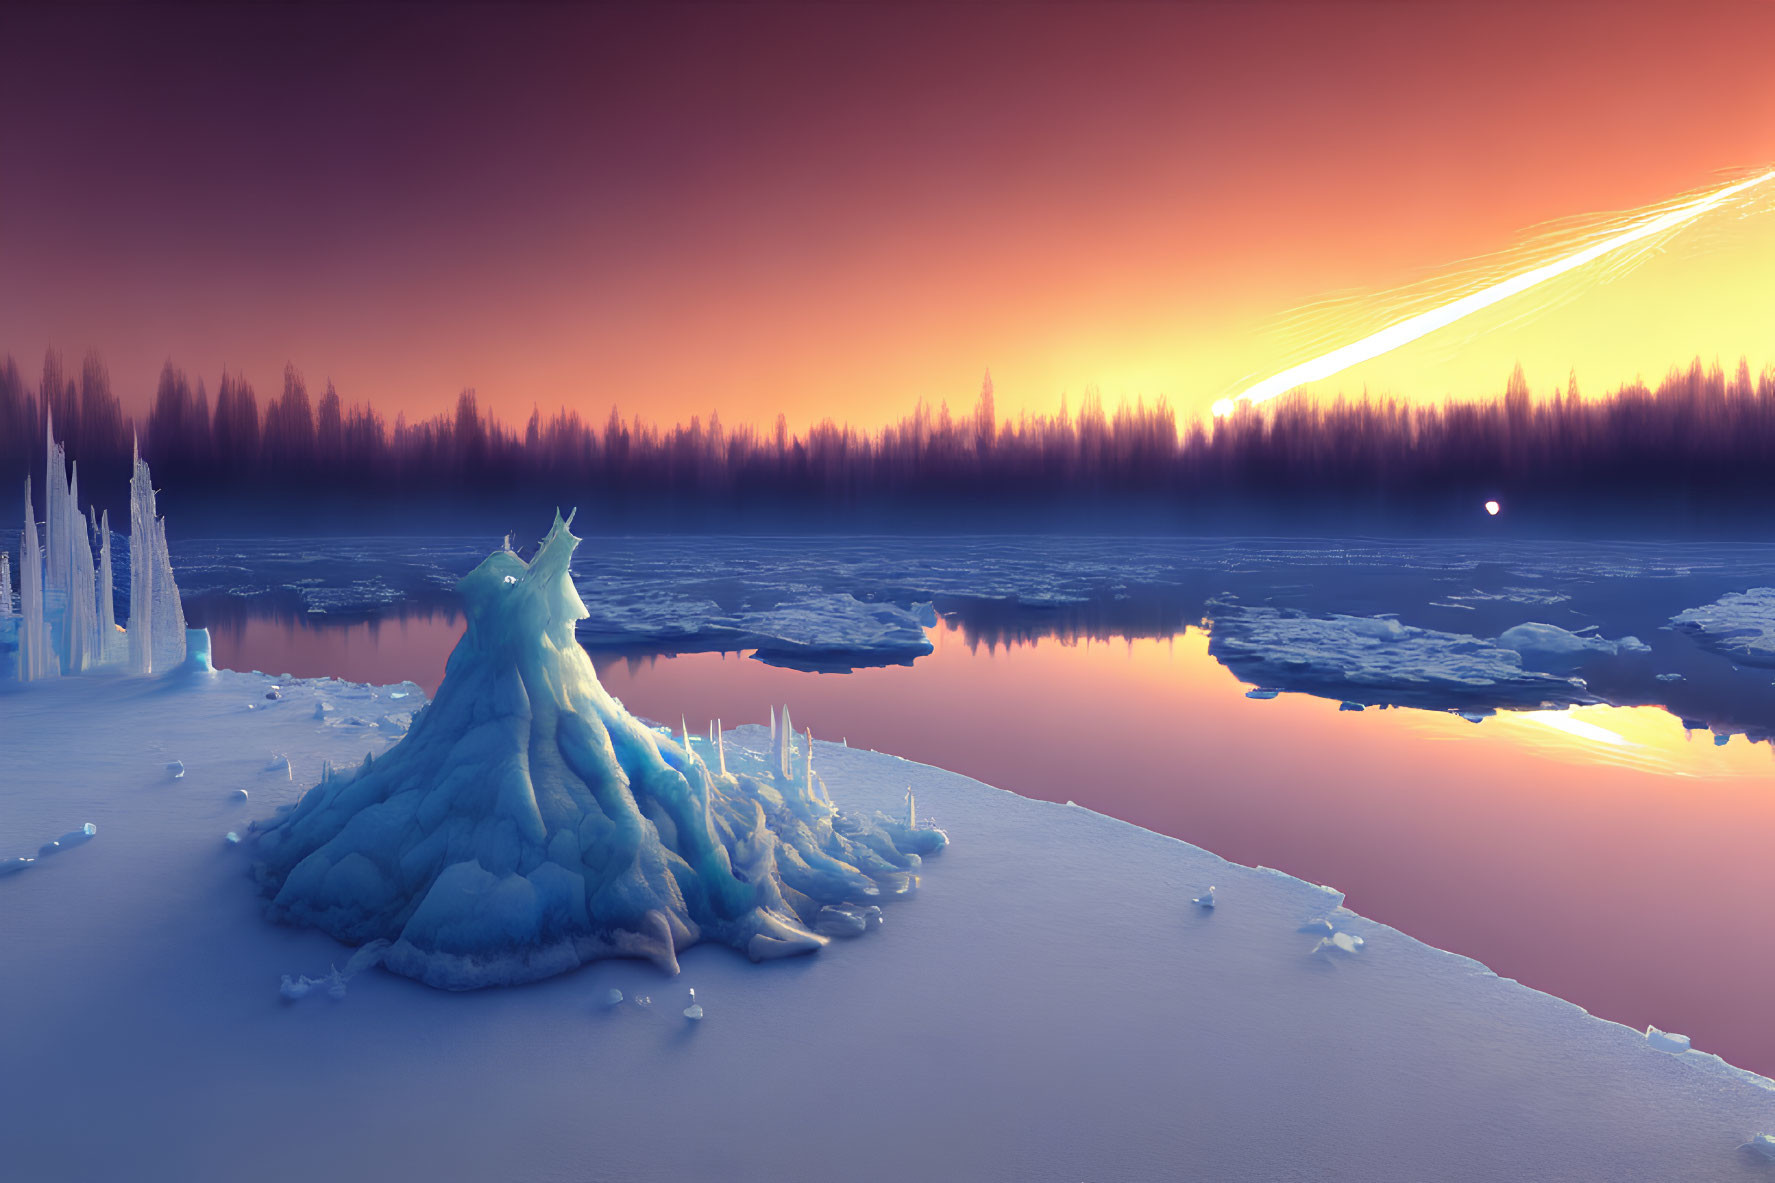 Winter landscape at dusk: frozen lake, ice formations, vibrant orange sky, descending comet